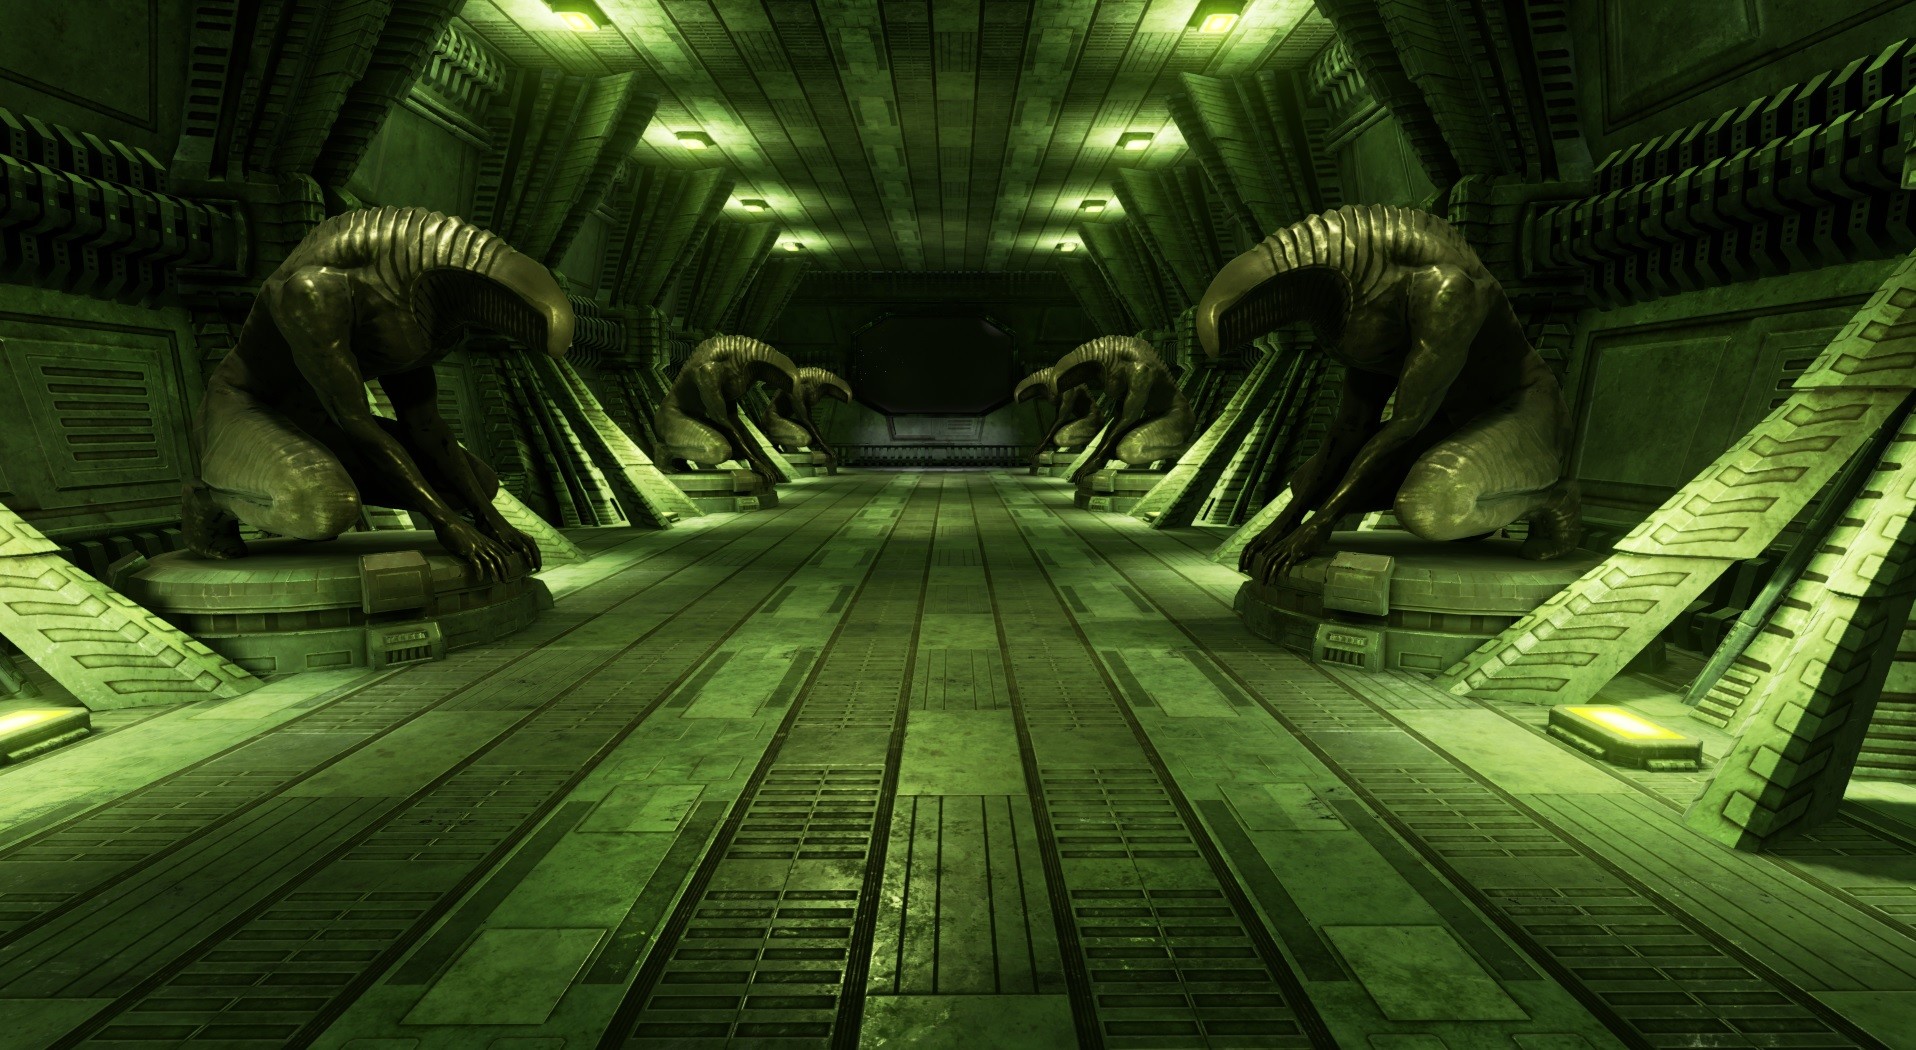 ArtStation - Alien Teleportation Chamber, Devin Reimer